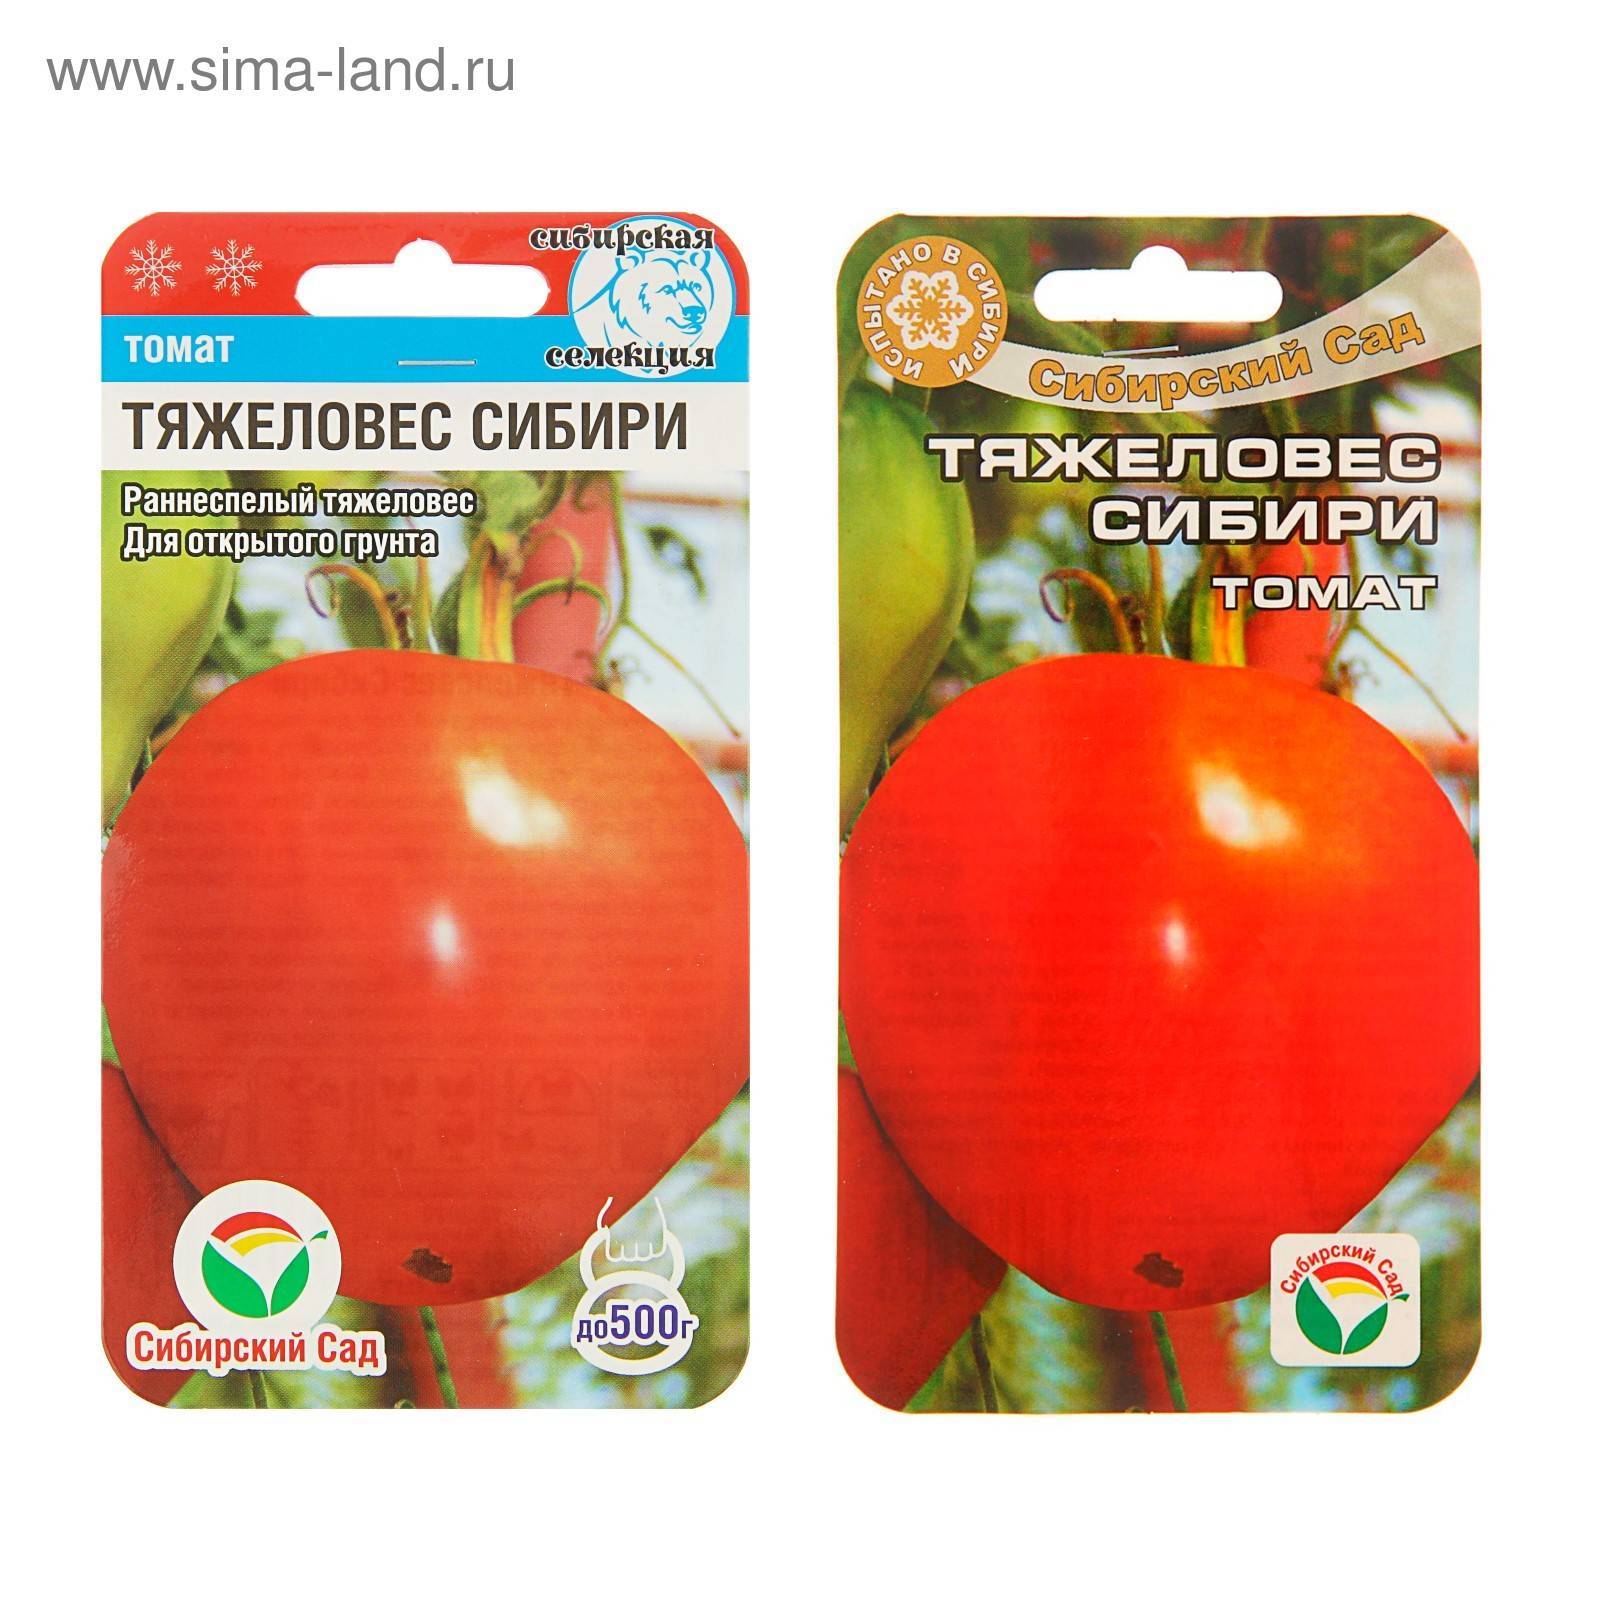 Любители томатов про сорт тяжеловес сибири — характеристика и описание